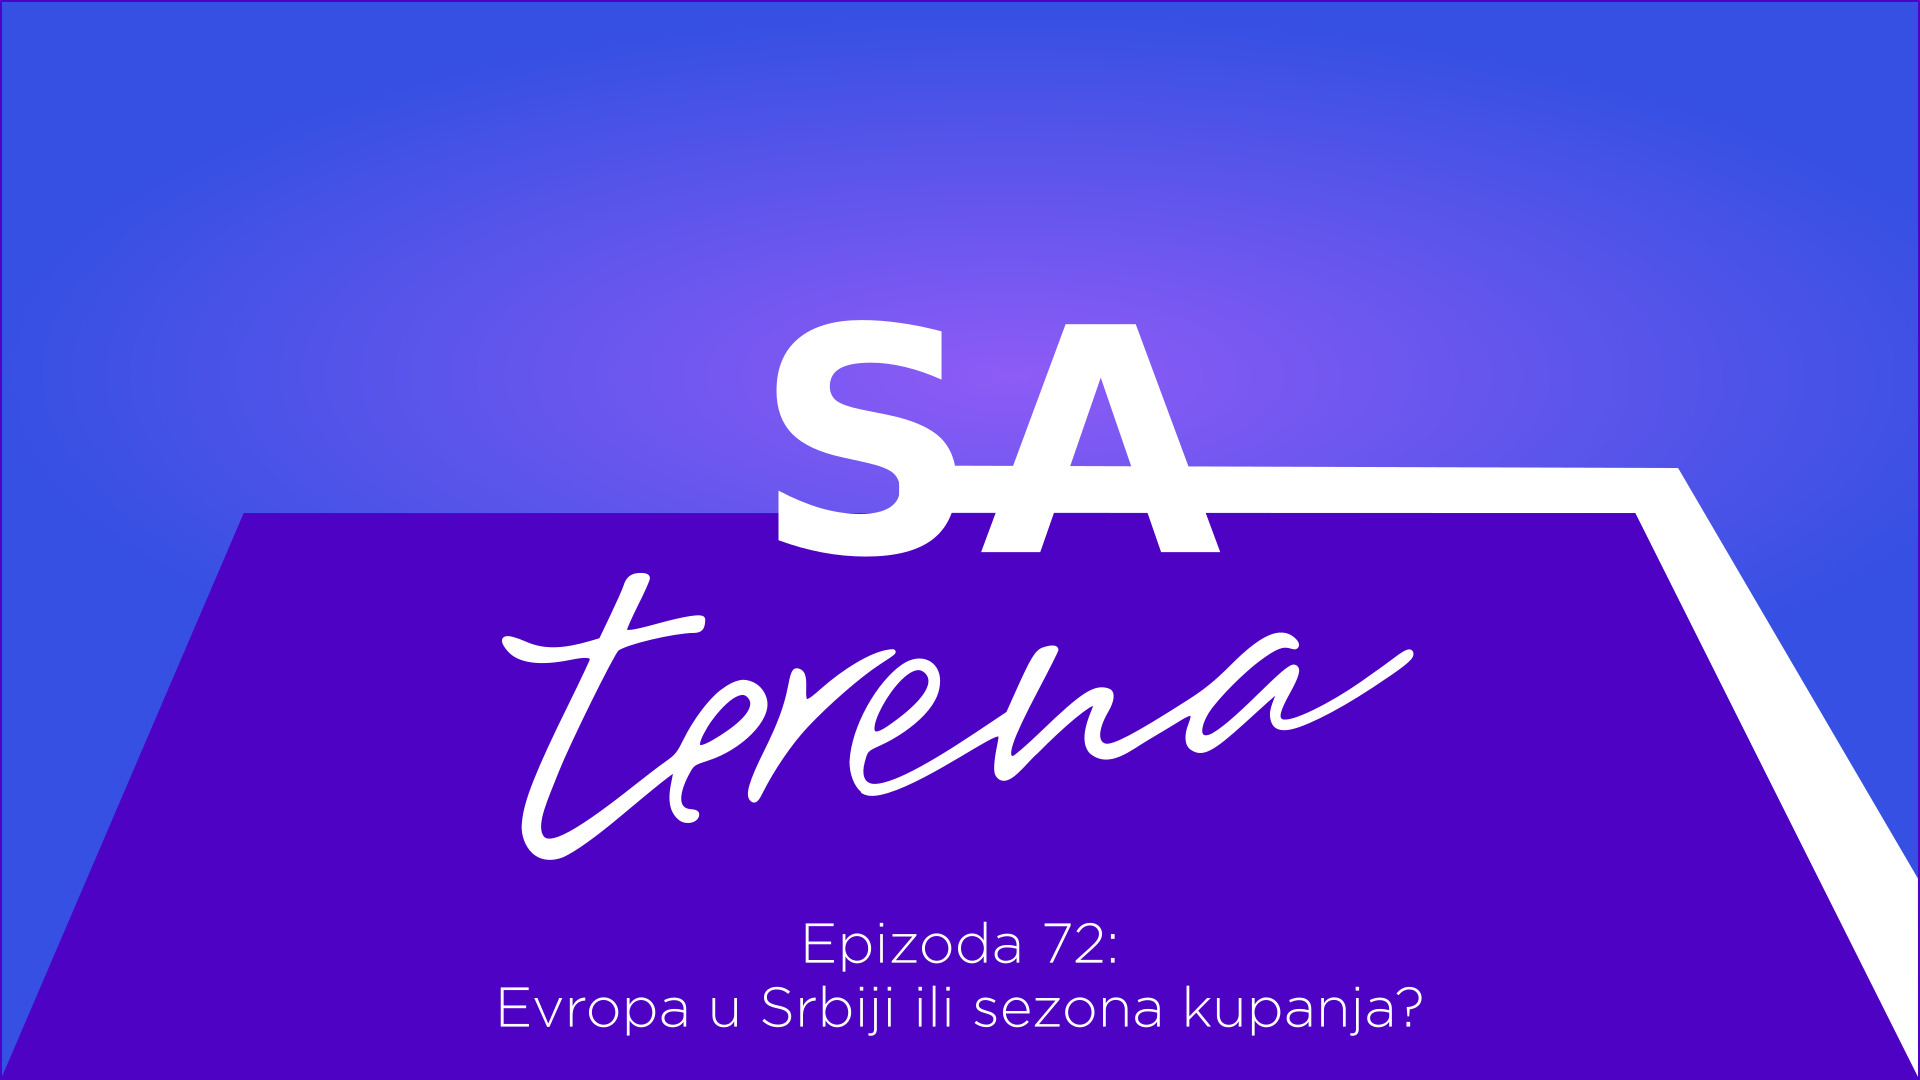 Sa terena 72: Evropa u Srbiji ili sezona kupanja?